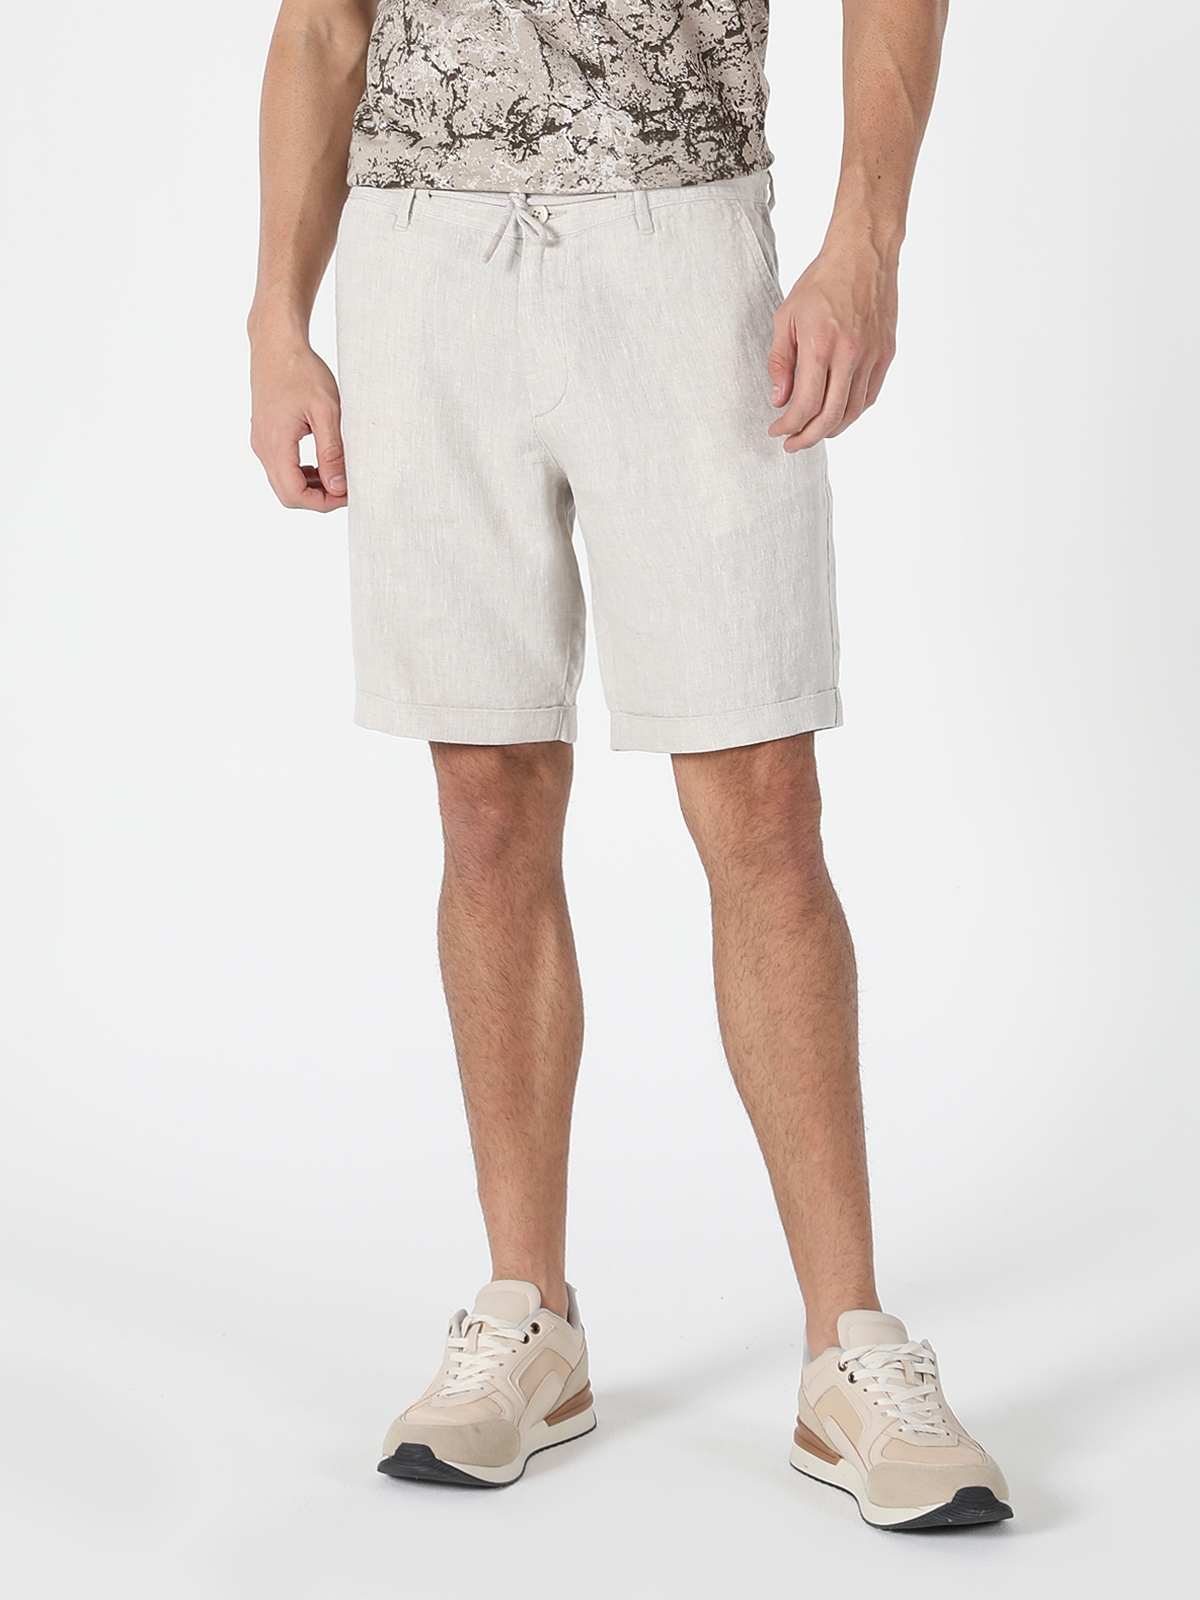 Afișați detalii pentru Short / Pantaloni Scurti De Barbati Alb Regular Fit  CL1059318